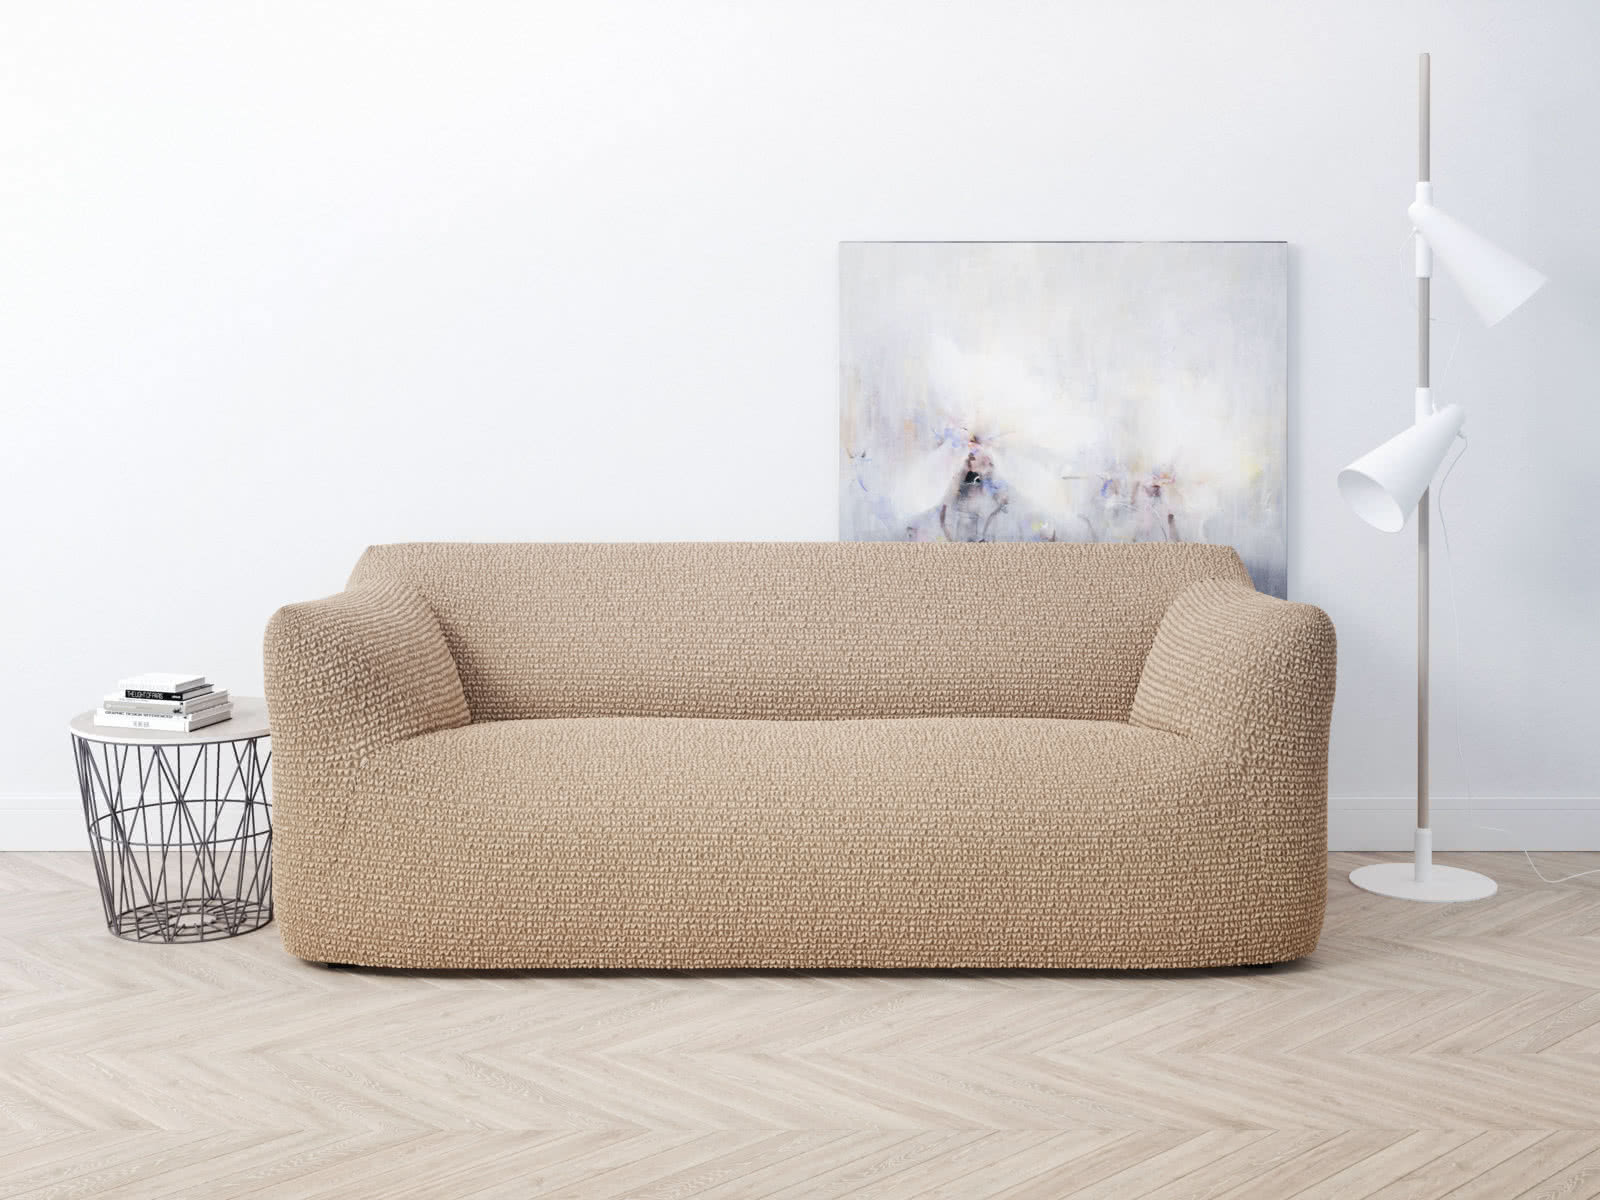 Купить чехол на диван DreamLine Чехол на двухместный диван Dreamline 100-150 см, песочный песочный дешево на официальном сайте